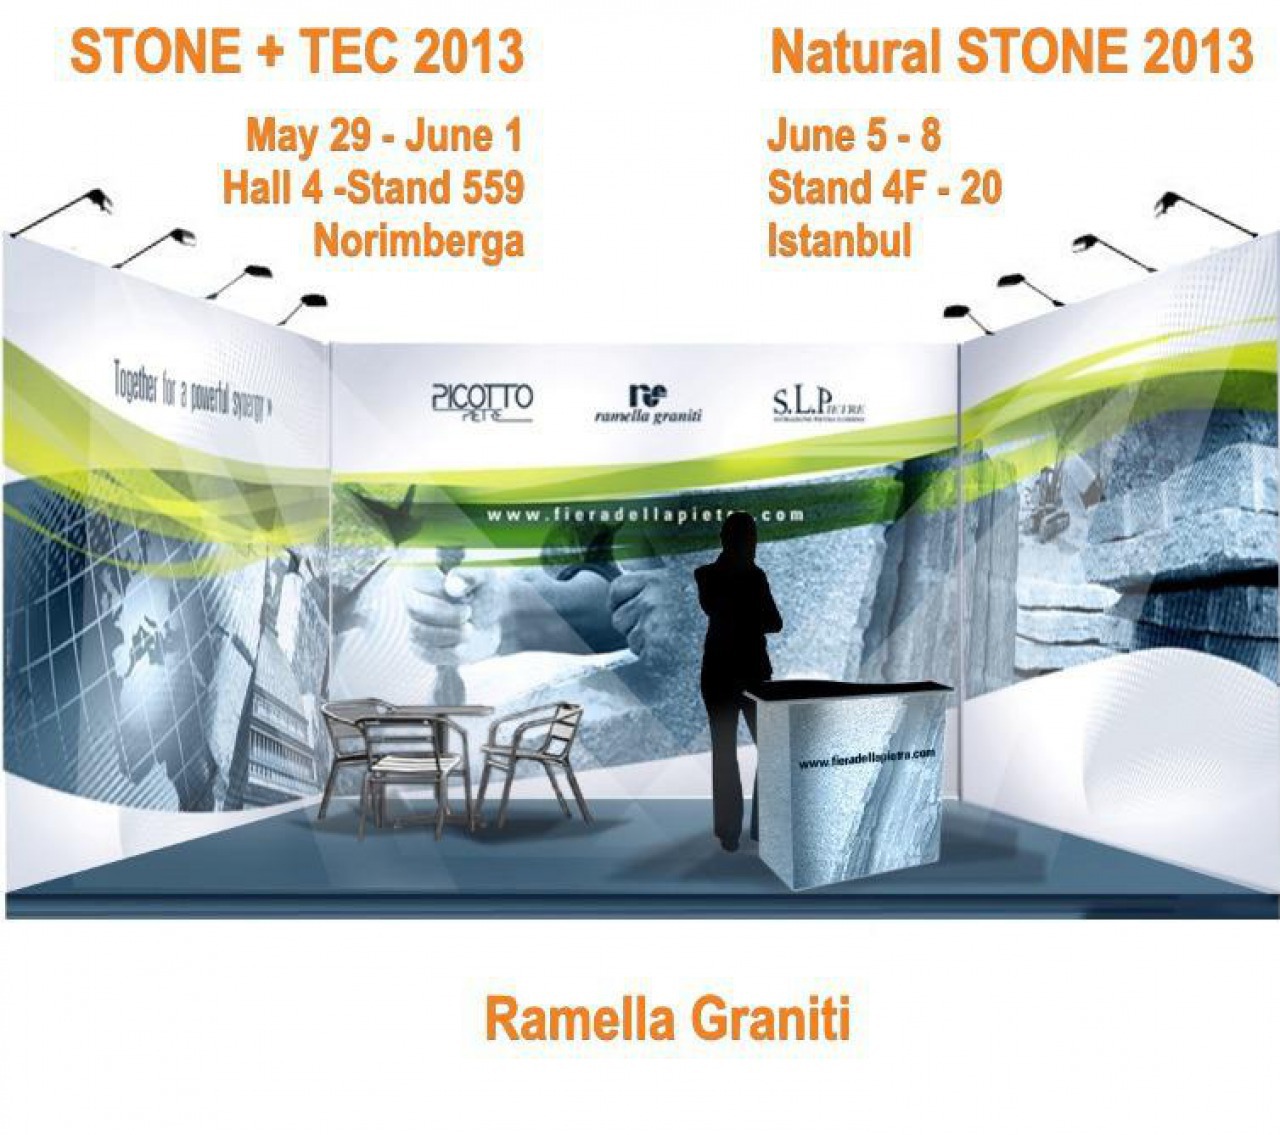 Ramella Graniti Nuremberg Stone+tec 2013 - Instanbul NATURAL STONE